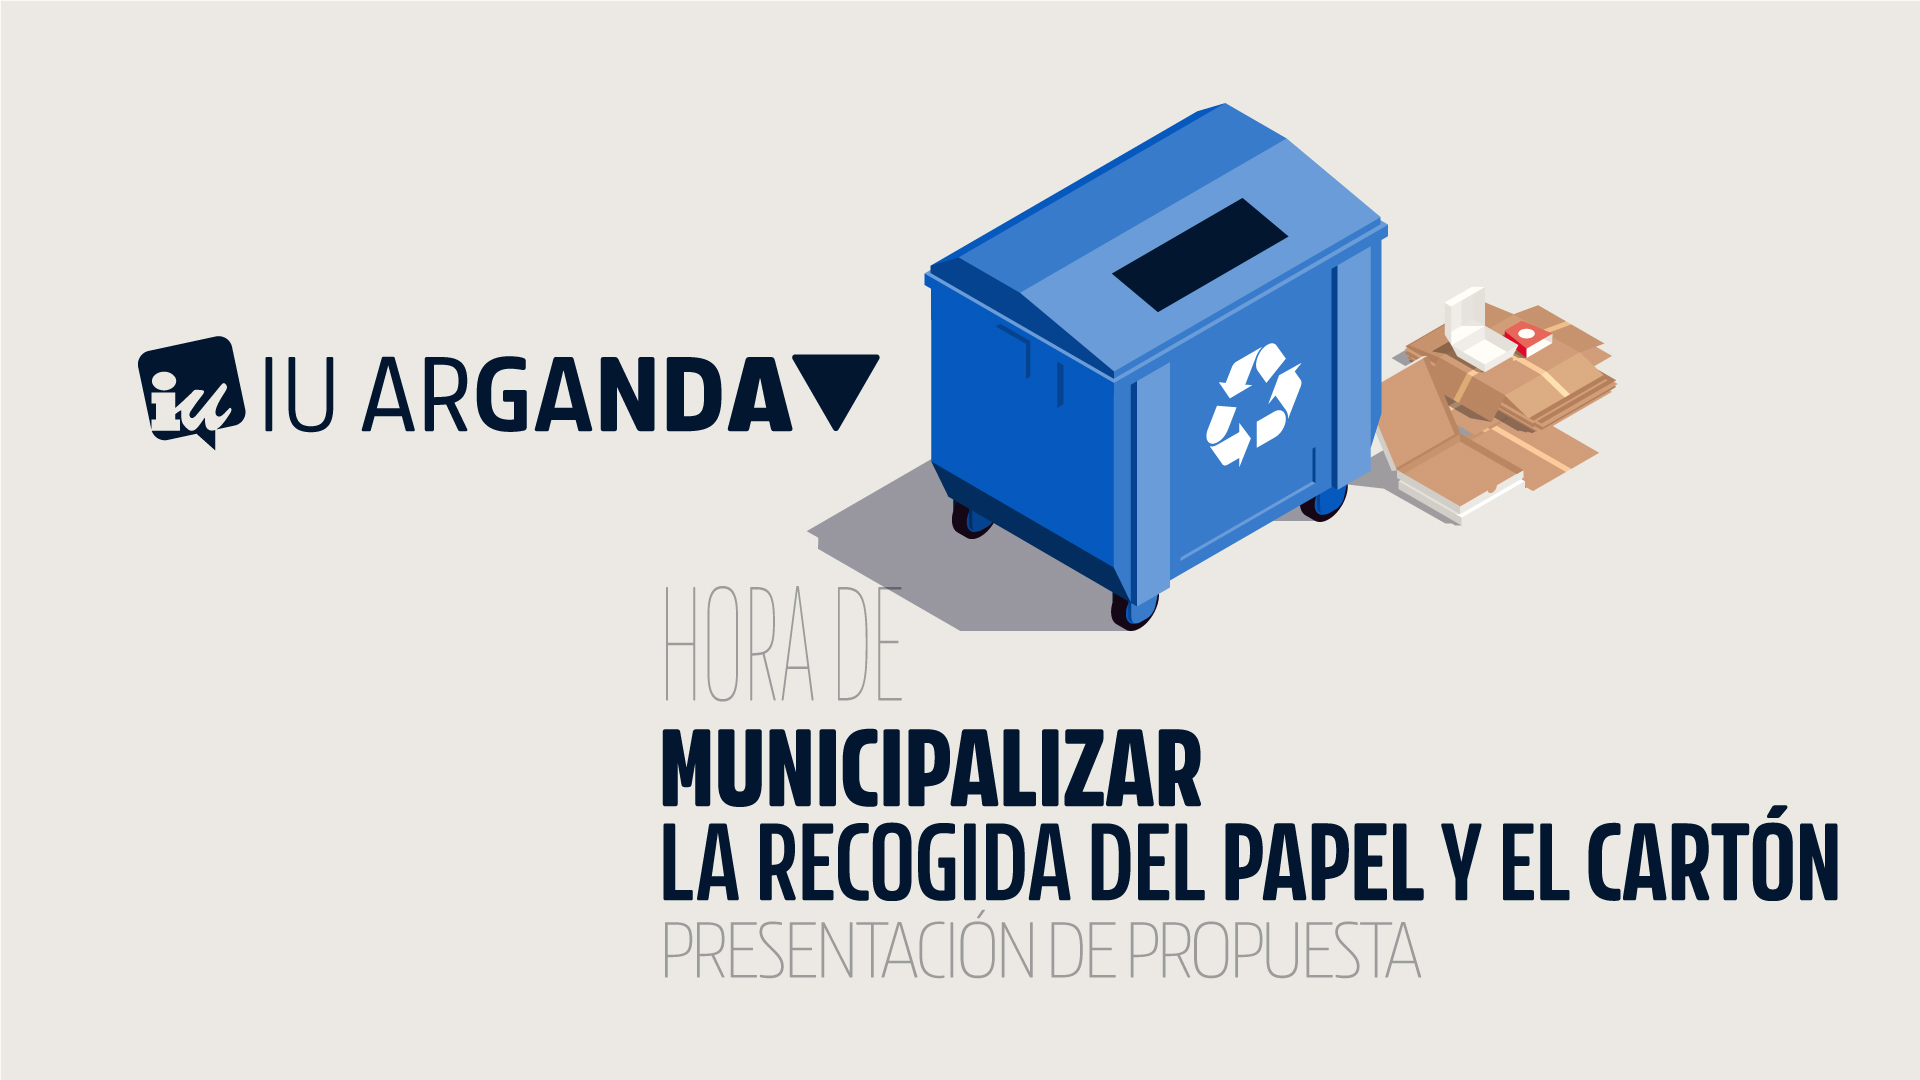 IU Arganda apuesta por la municipalización de la recogida del papel y el cartón